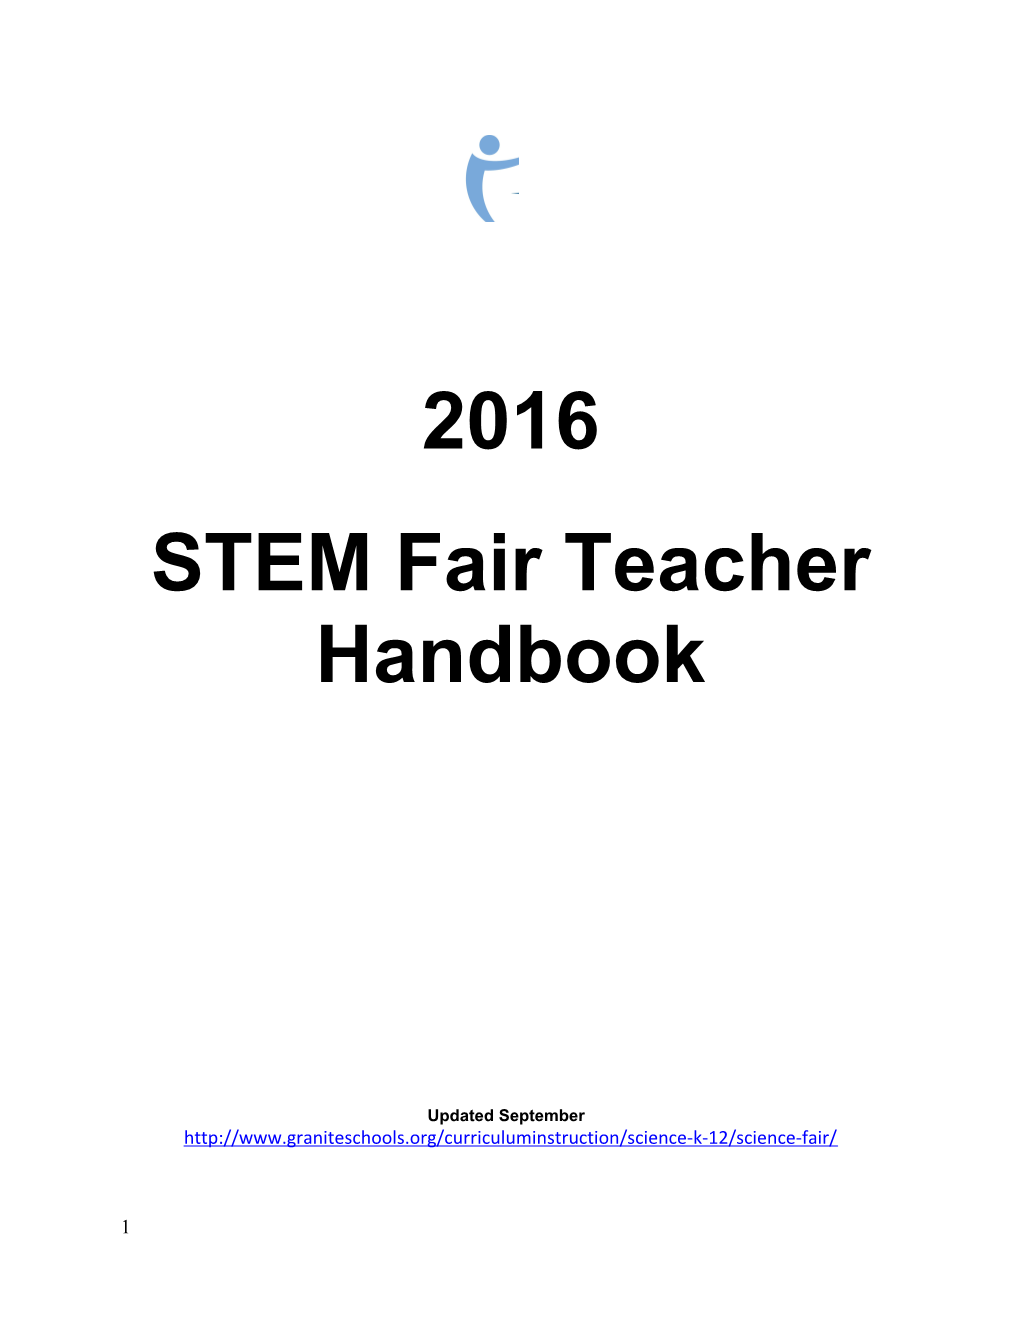 STEM Fair Teacher Handbook